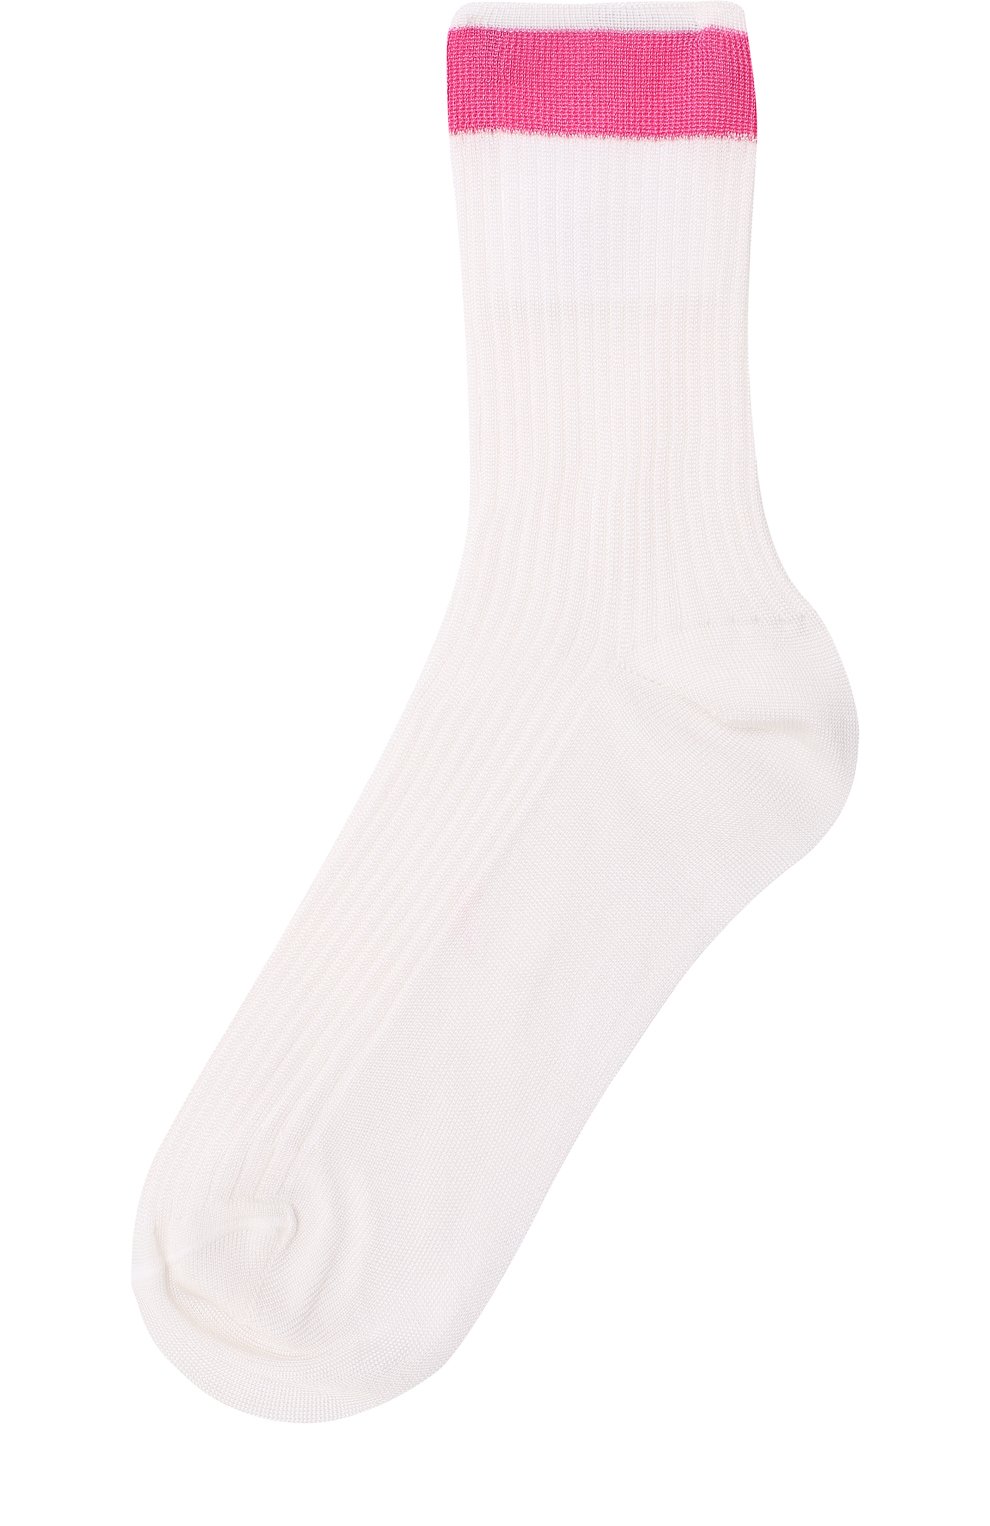 Женские шелковые носки с контрастной отделкой VALENTINO розового цвета, арт. PB3KI01D/3TD | Фото 1 (Материал внешний: Шелк, Синтетический материал)